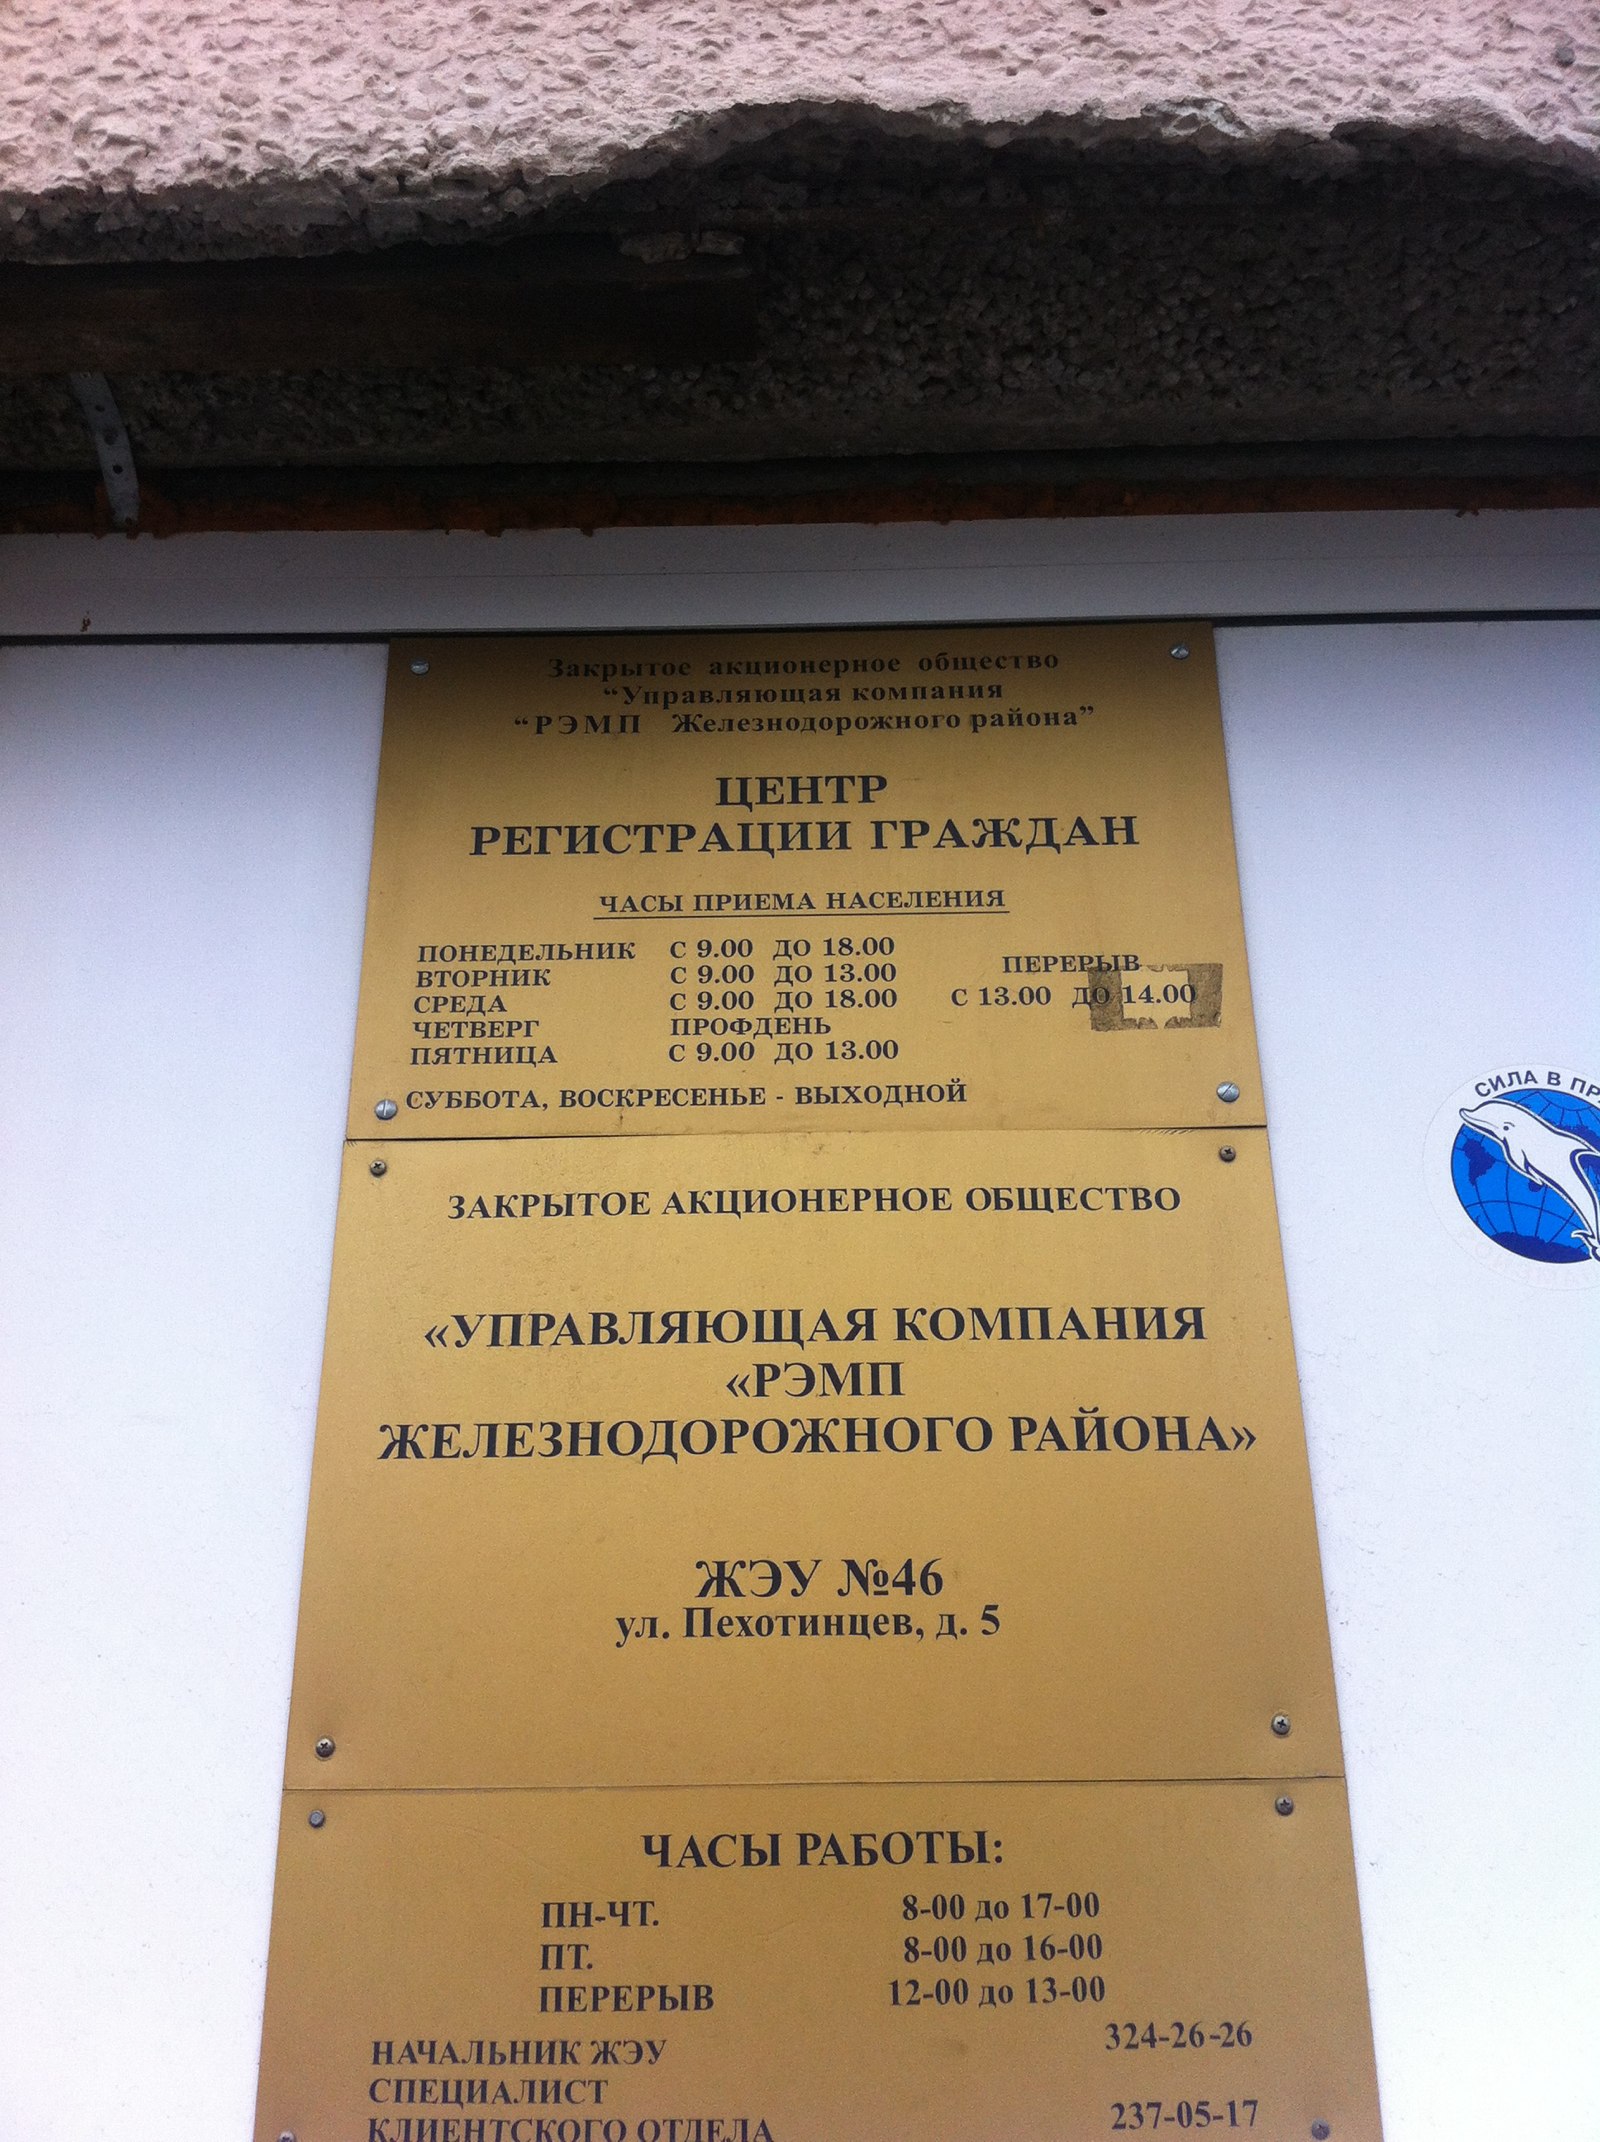 Гражданская 4 Екатеринбург паспортный. РЭМП железнодорожного района Екатеринбург. Телефон железнодорожного паспортного стола